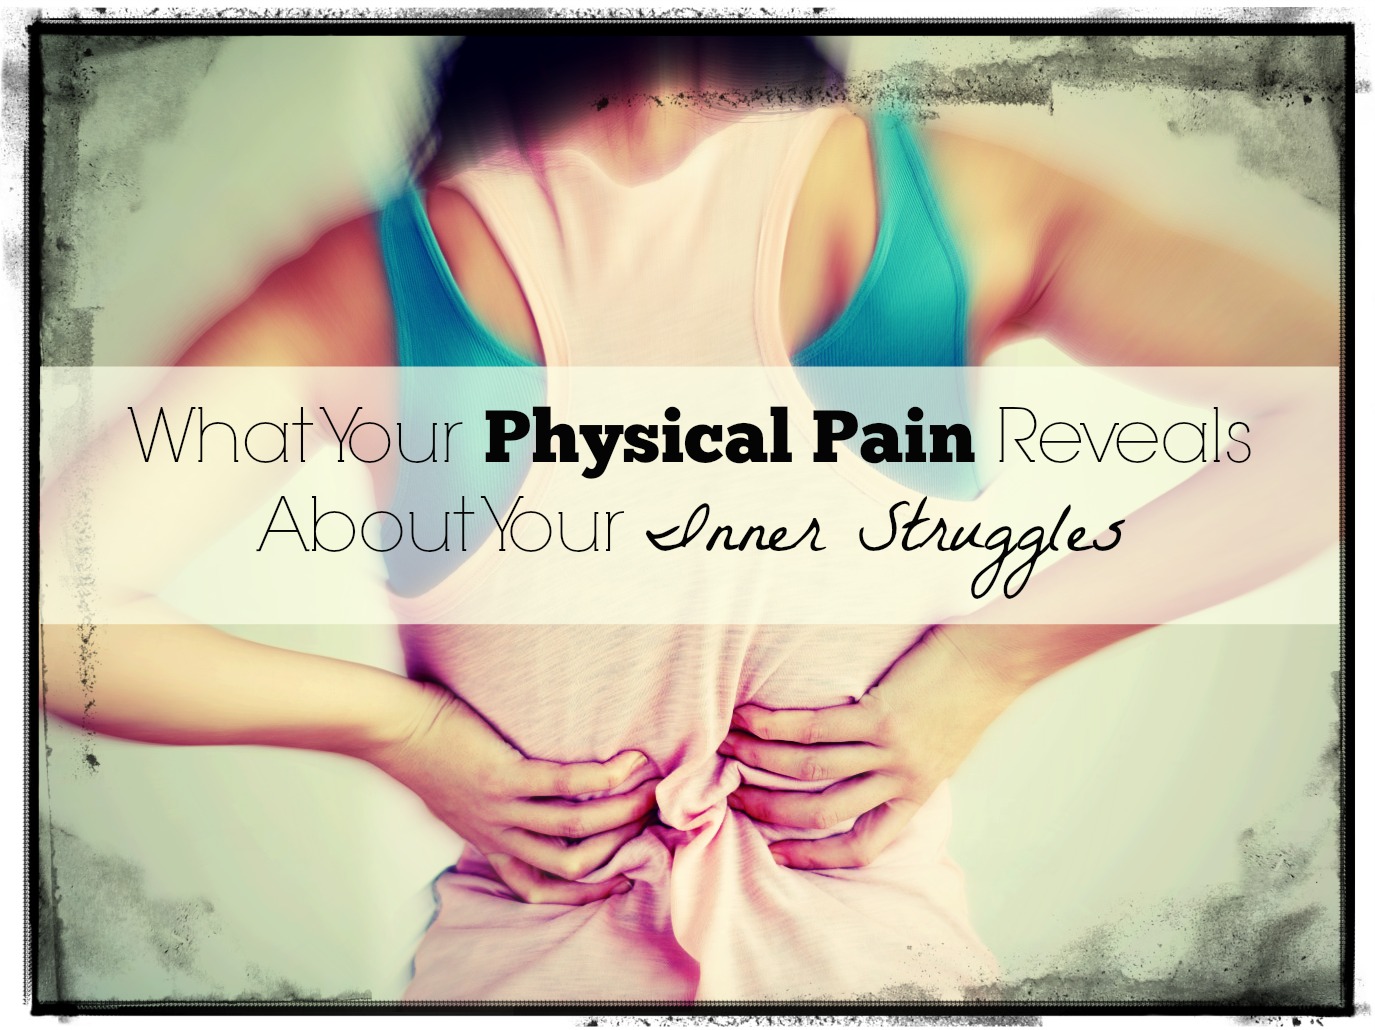 Mit mondanak fizikai fájdalmaid belső küzdelmeidről?